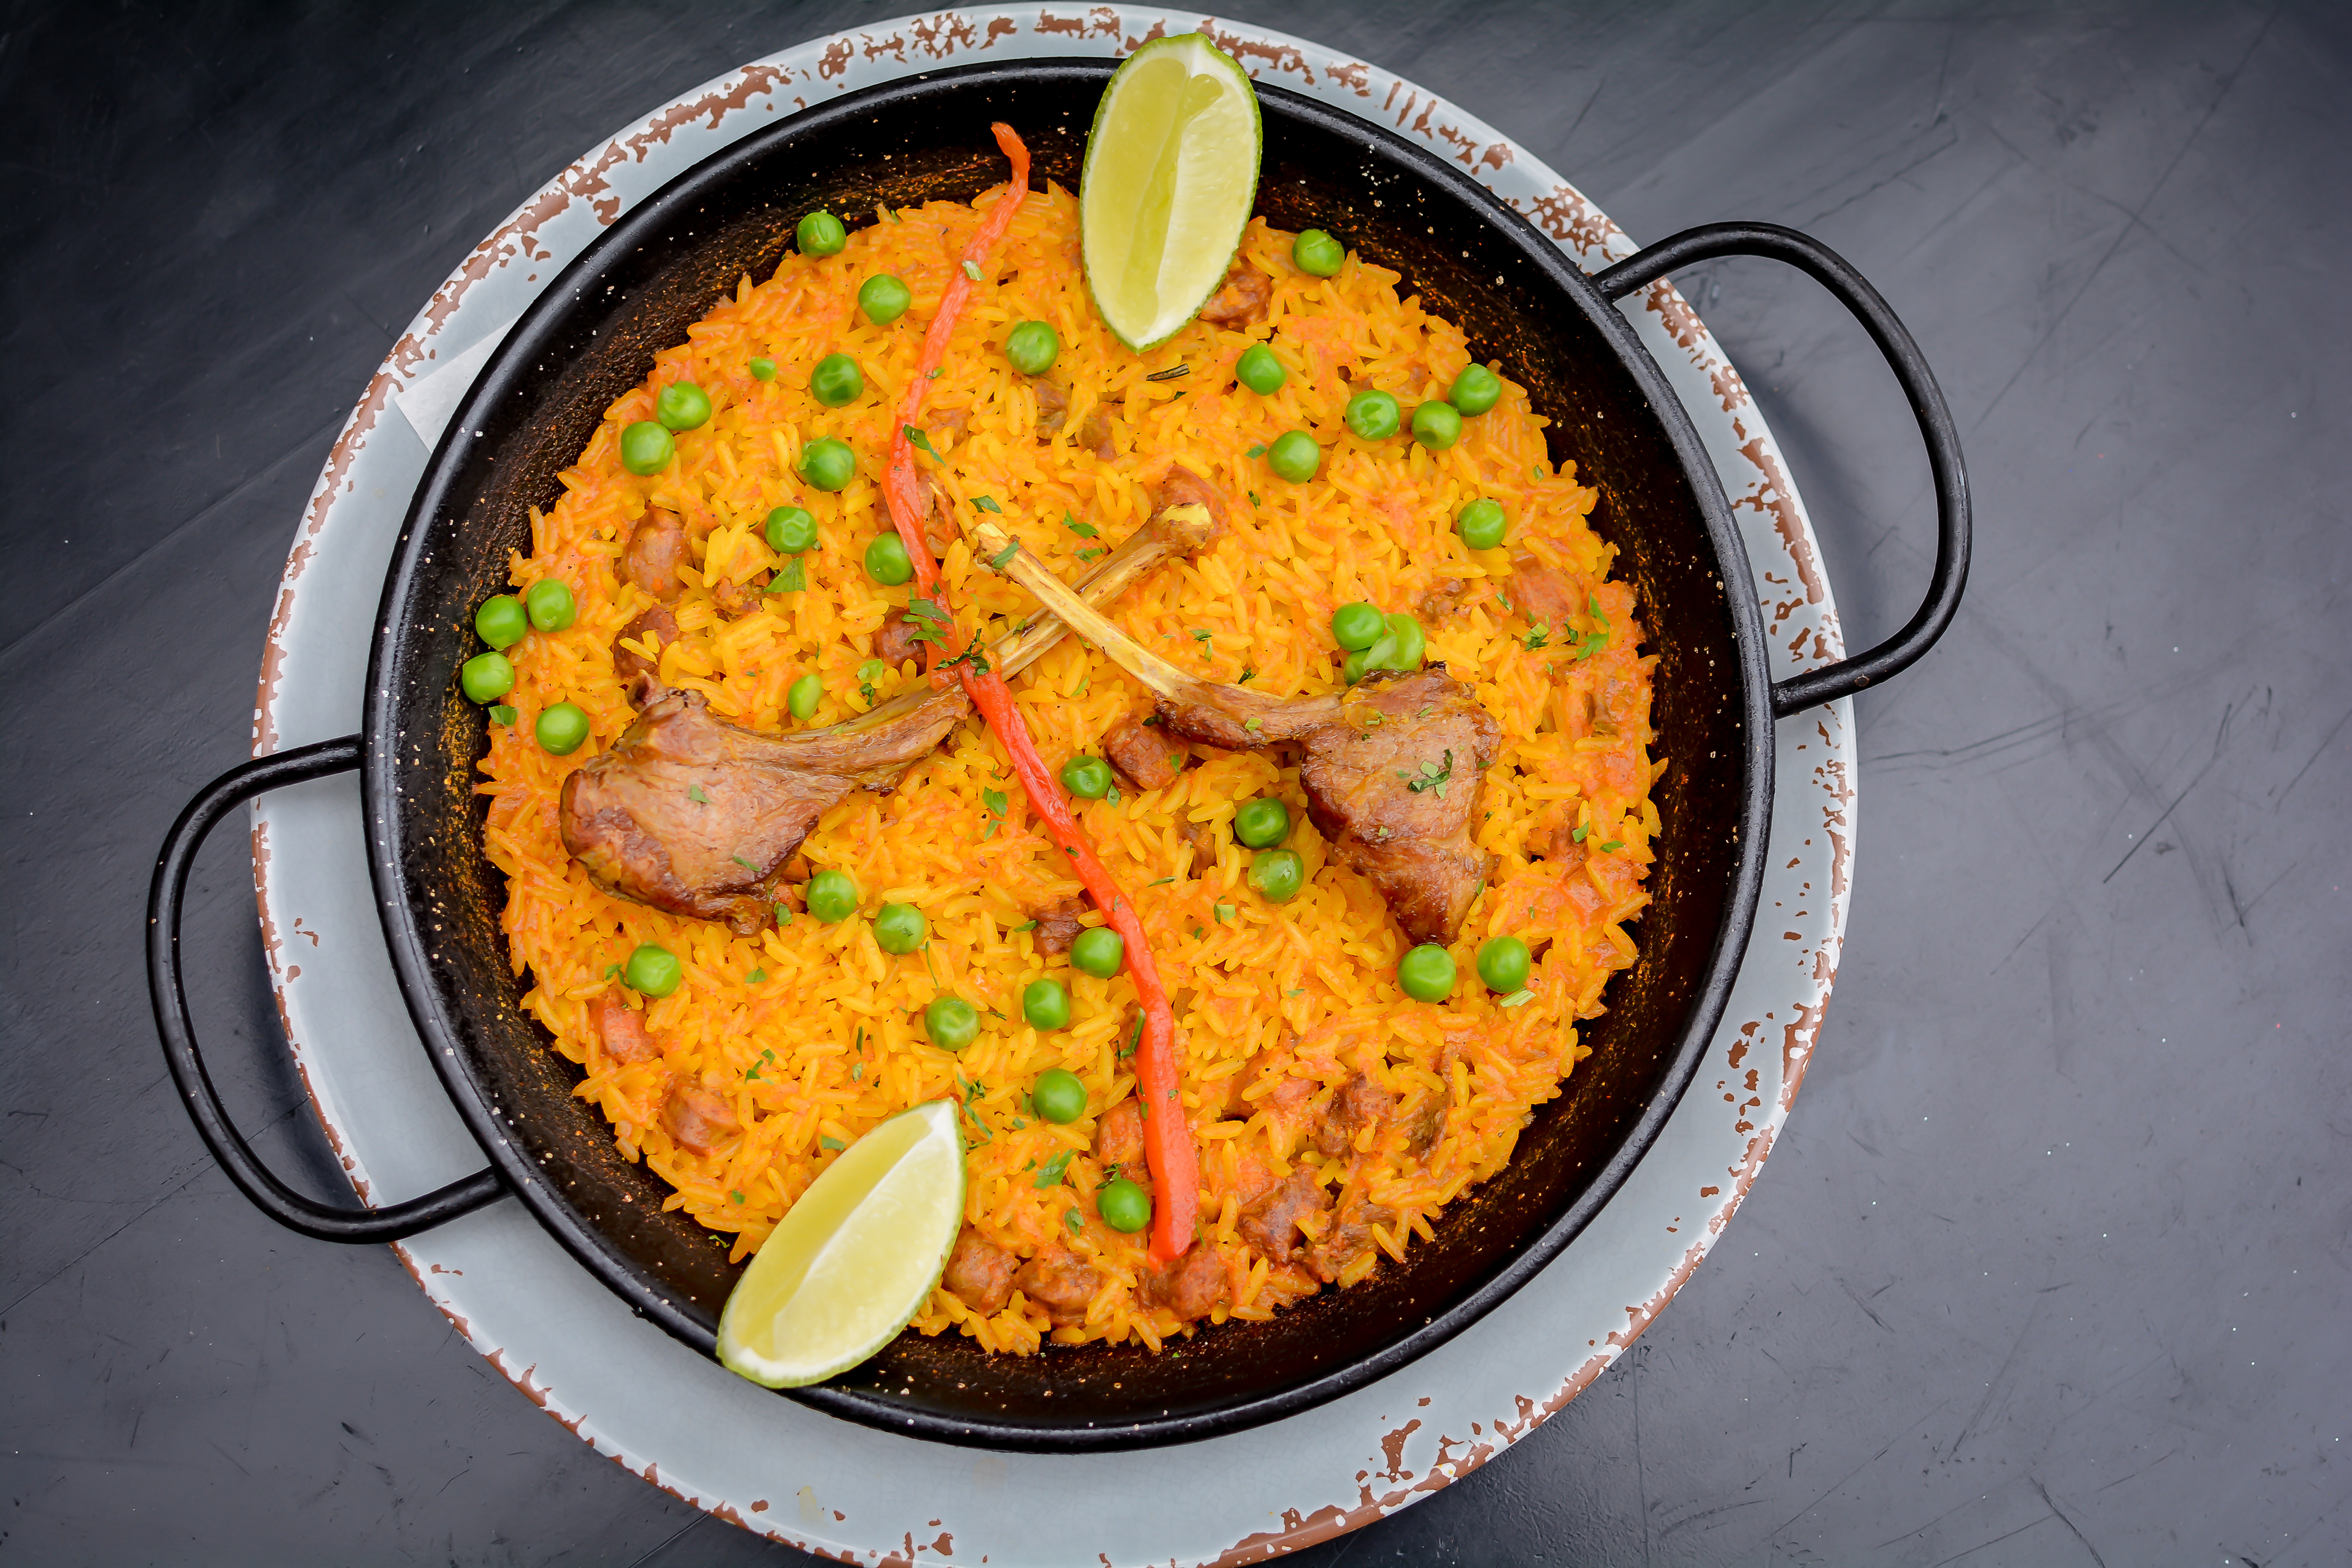 Venga! - Pouco conhecido aqui no Brasil, o Fideuá é um prato espanhol muito  parecido com a paella, e que leva, no lugar do arroz, uma massa especial.  Toda quarta feira, no